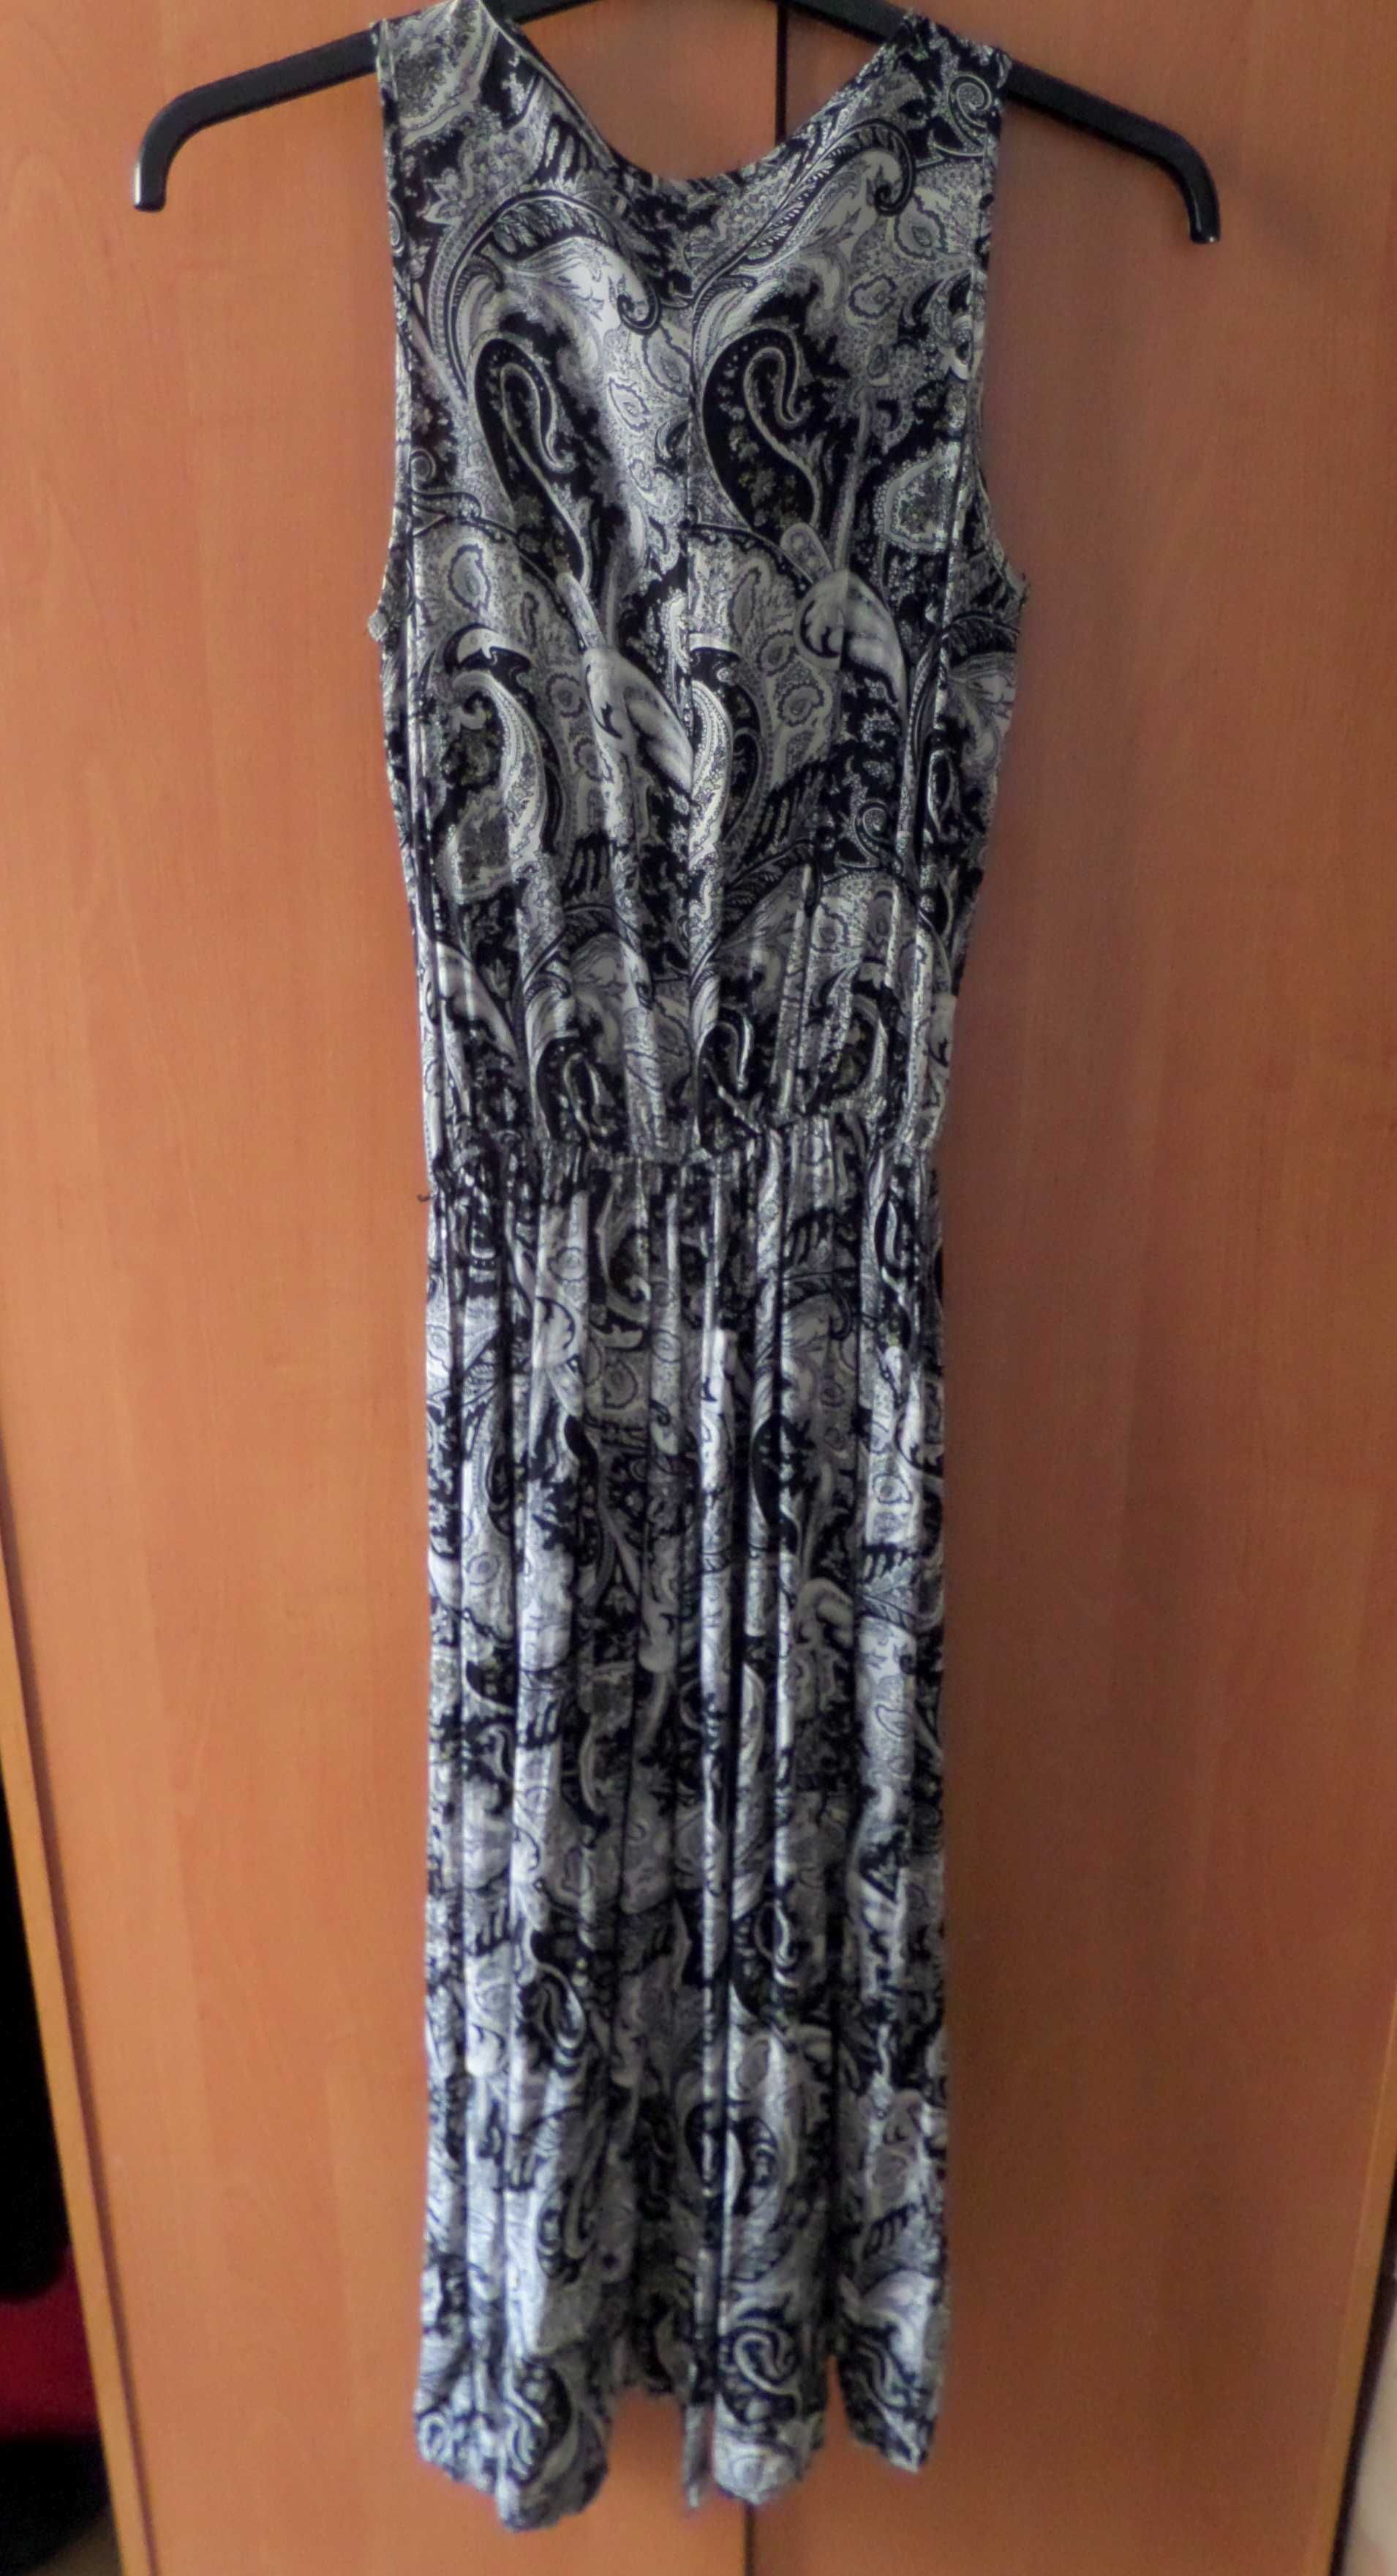 Maxi sukienka długa CH fashion S M etno czarna biała na ramiączkach